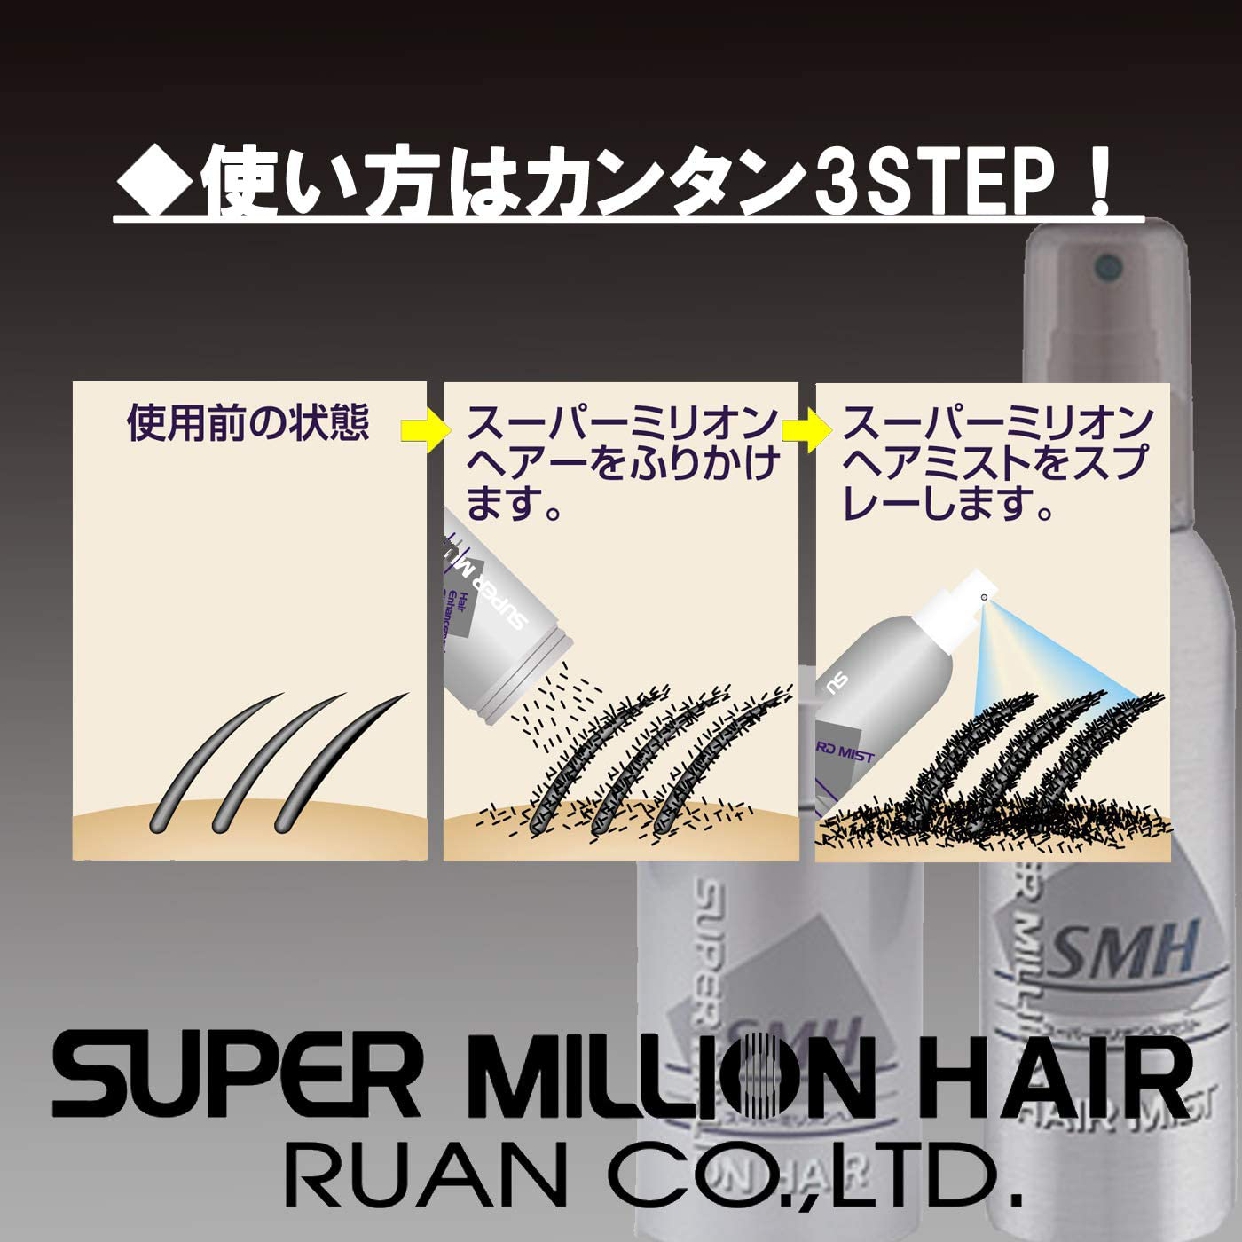 SUPER MILLION HAIR(スーパーミリオンヘアー) スーパーミリオンヘアーの商品画像サムネ6 